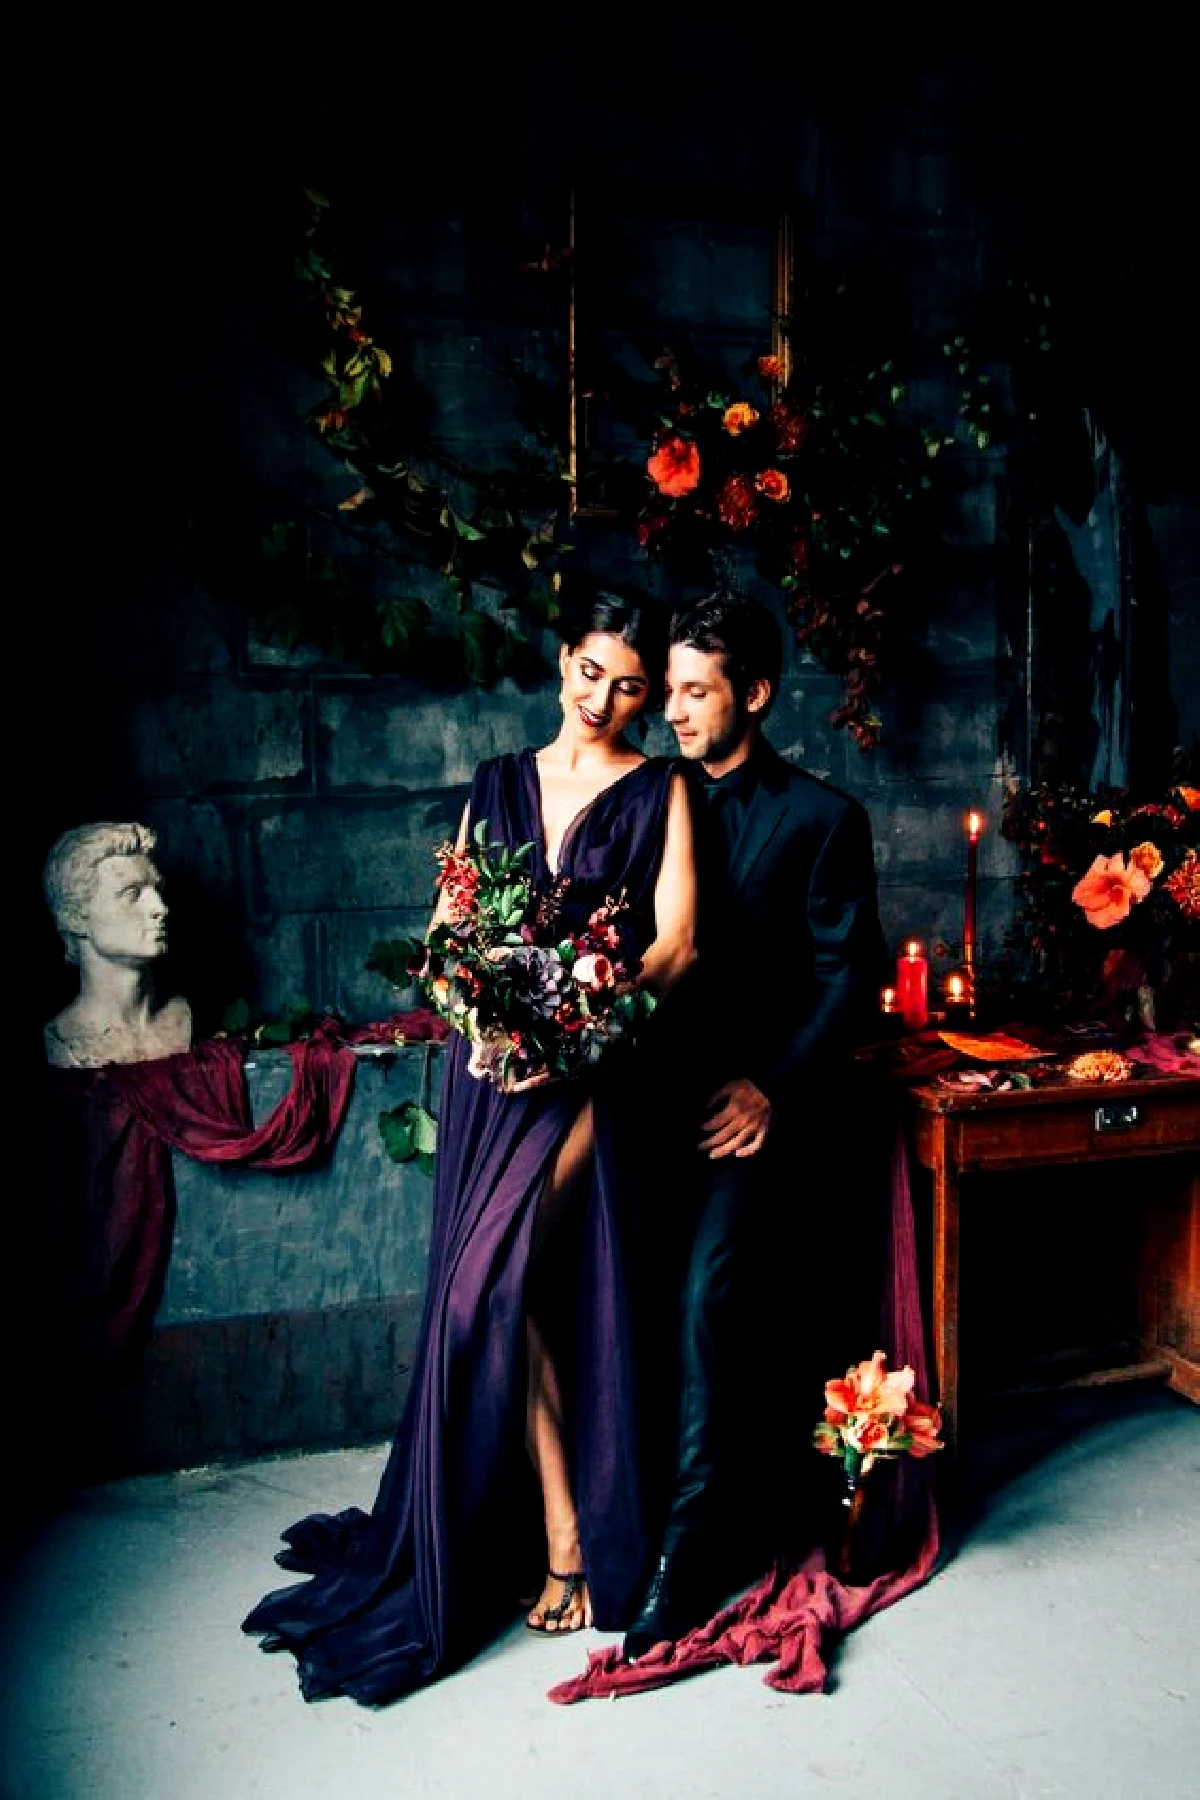 Casamento de fantasia sombria: celebrando o amor em estilo gótico